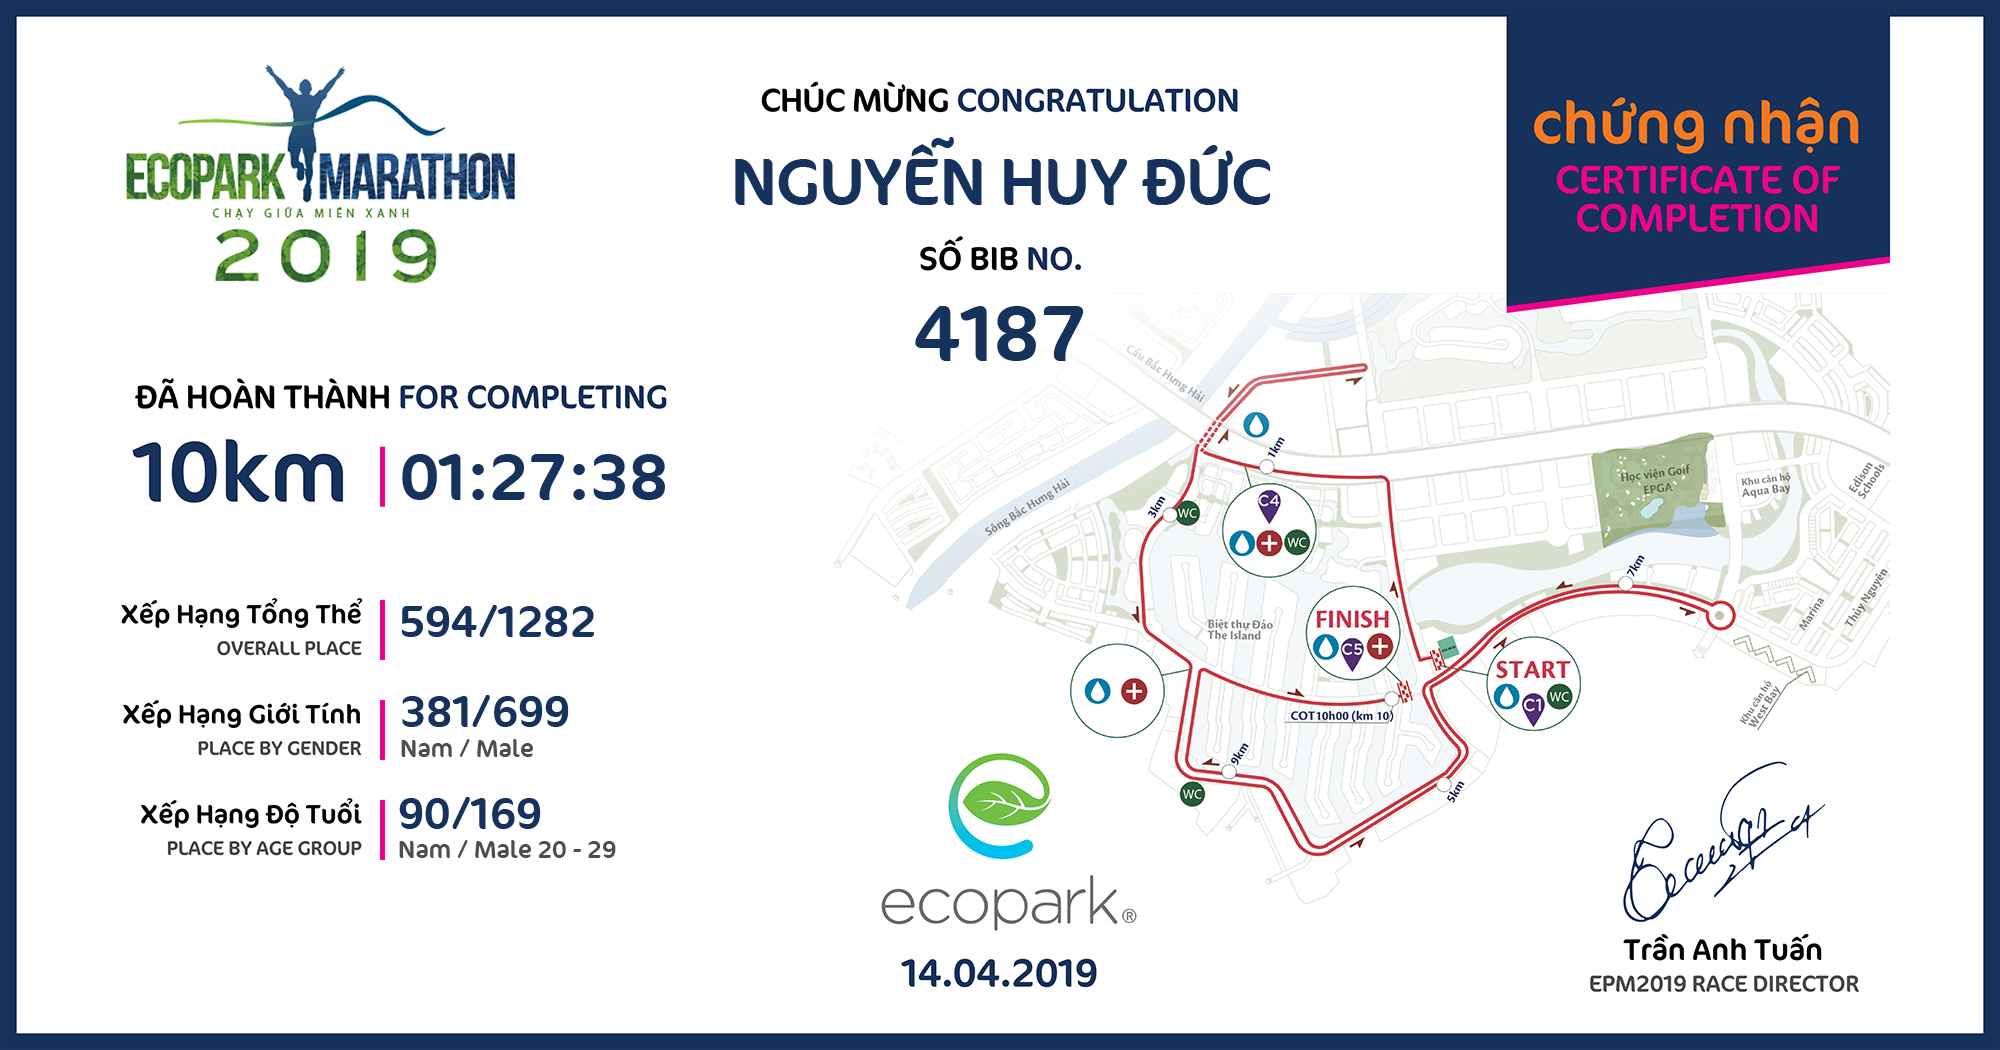 4187 - Nguyễn Huy Đức